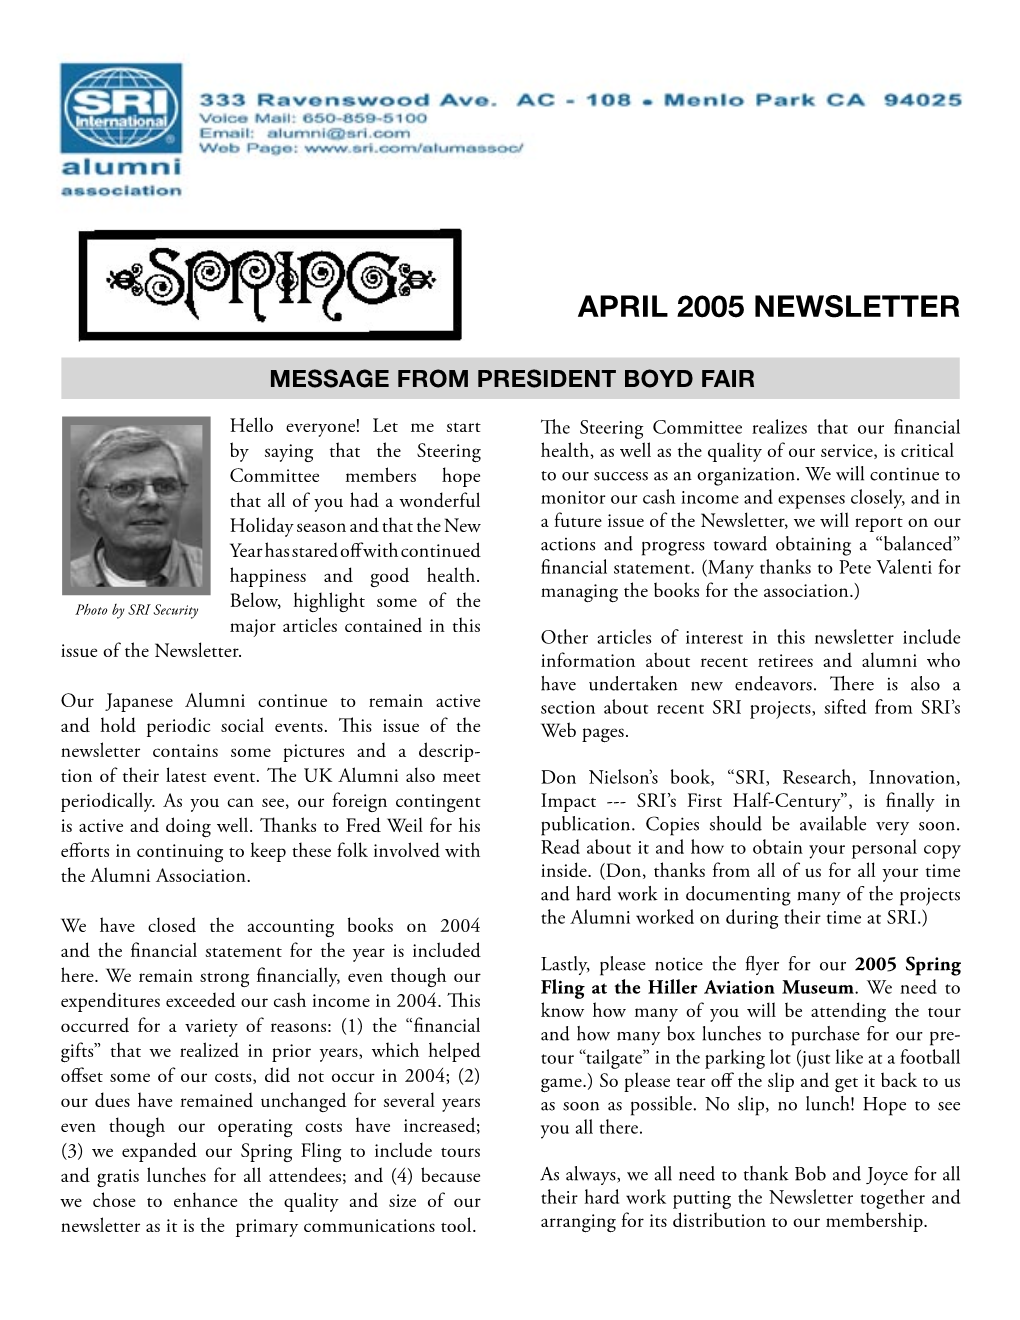 April 2005 Newsletter